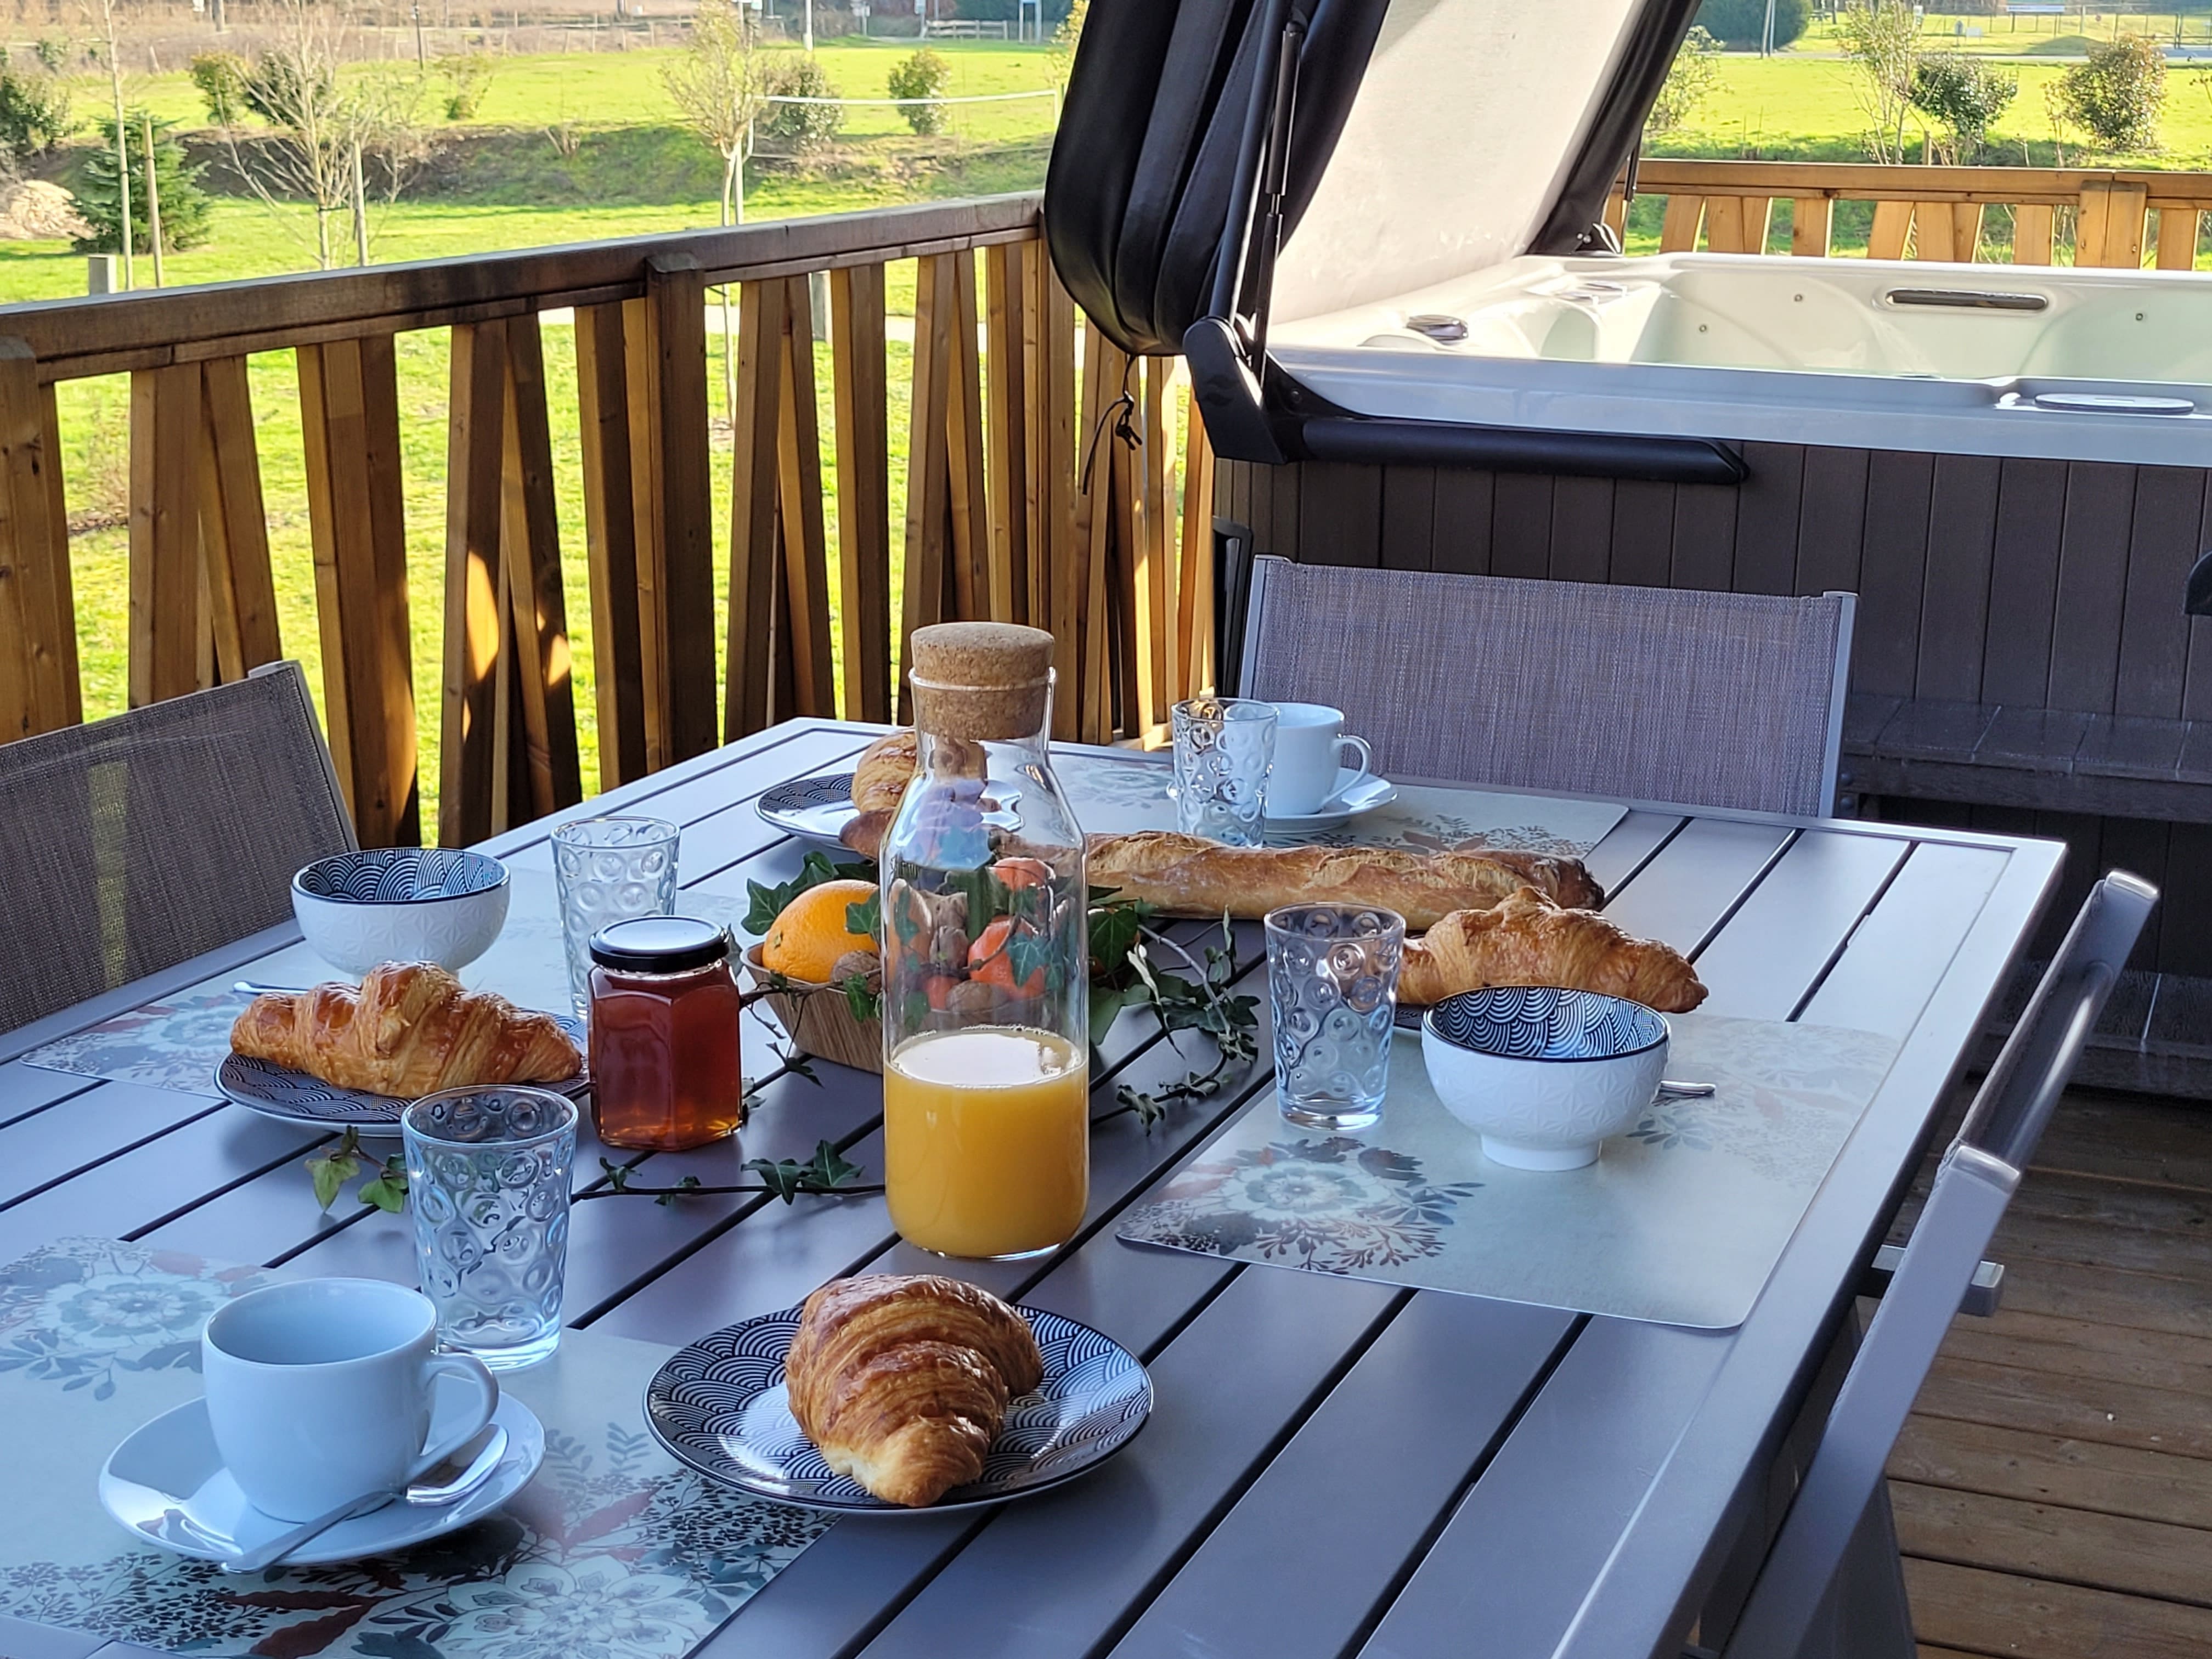 Terrasse ensoleillée avec vue sur un paysage verdoyant et spa en arrière-plan, une table dressée pour un petit-déjeuner gourmand avec des produits frais.